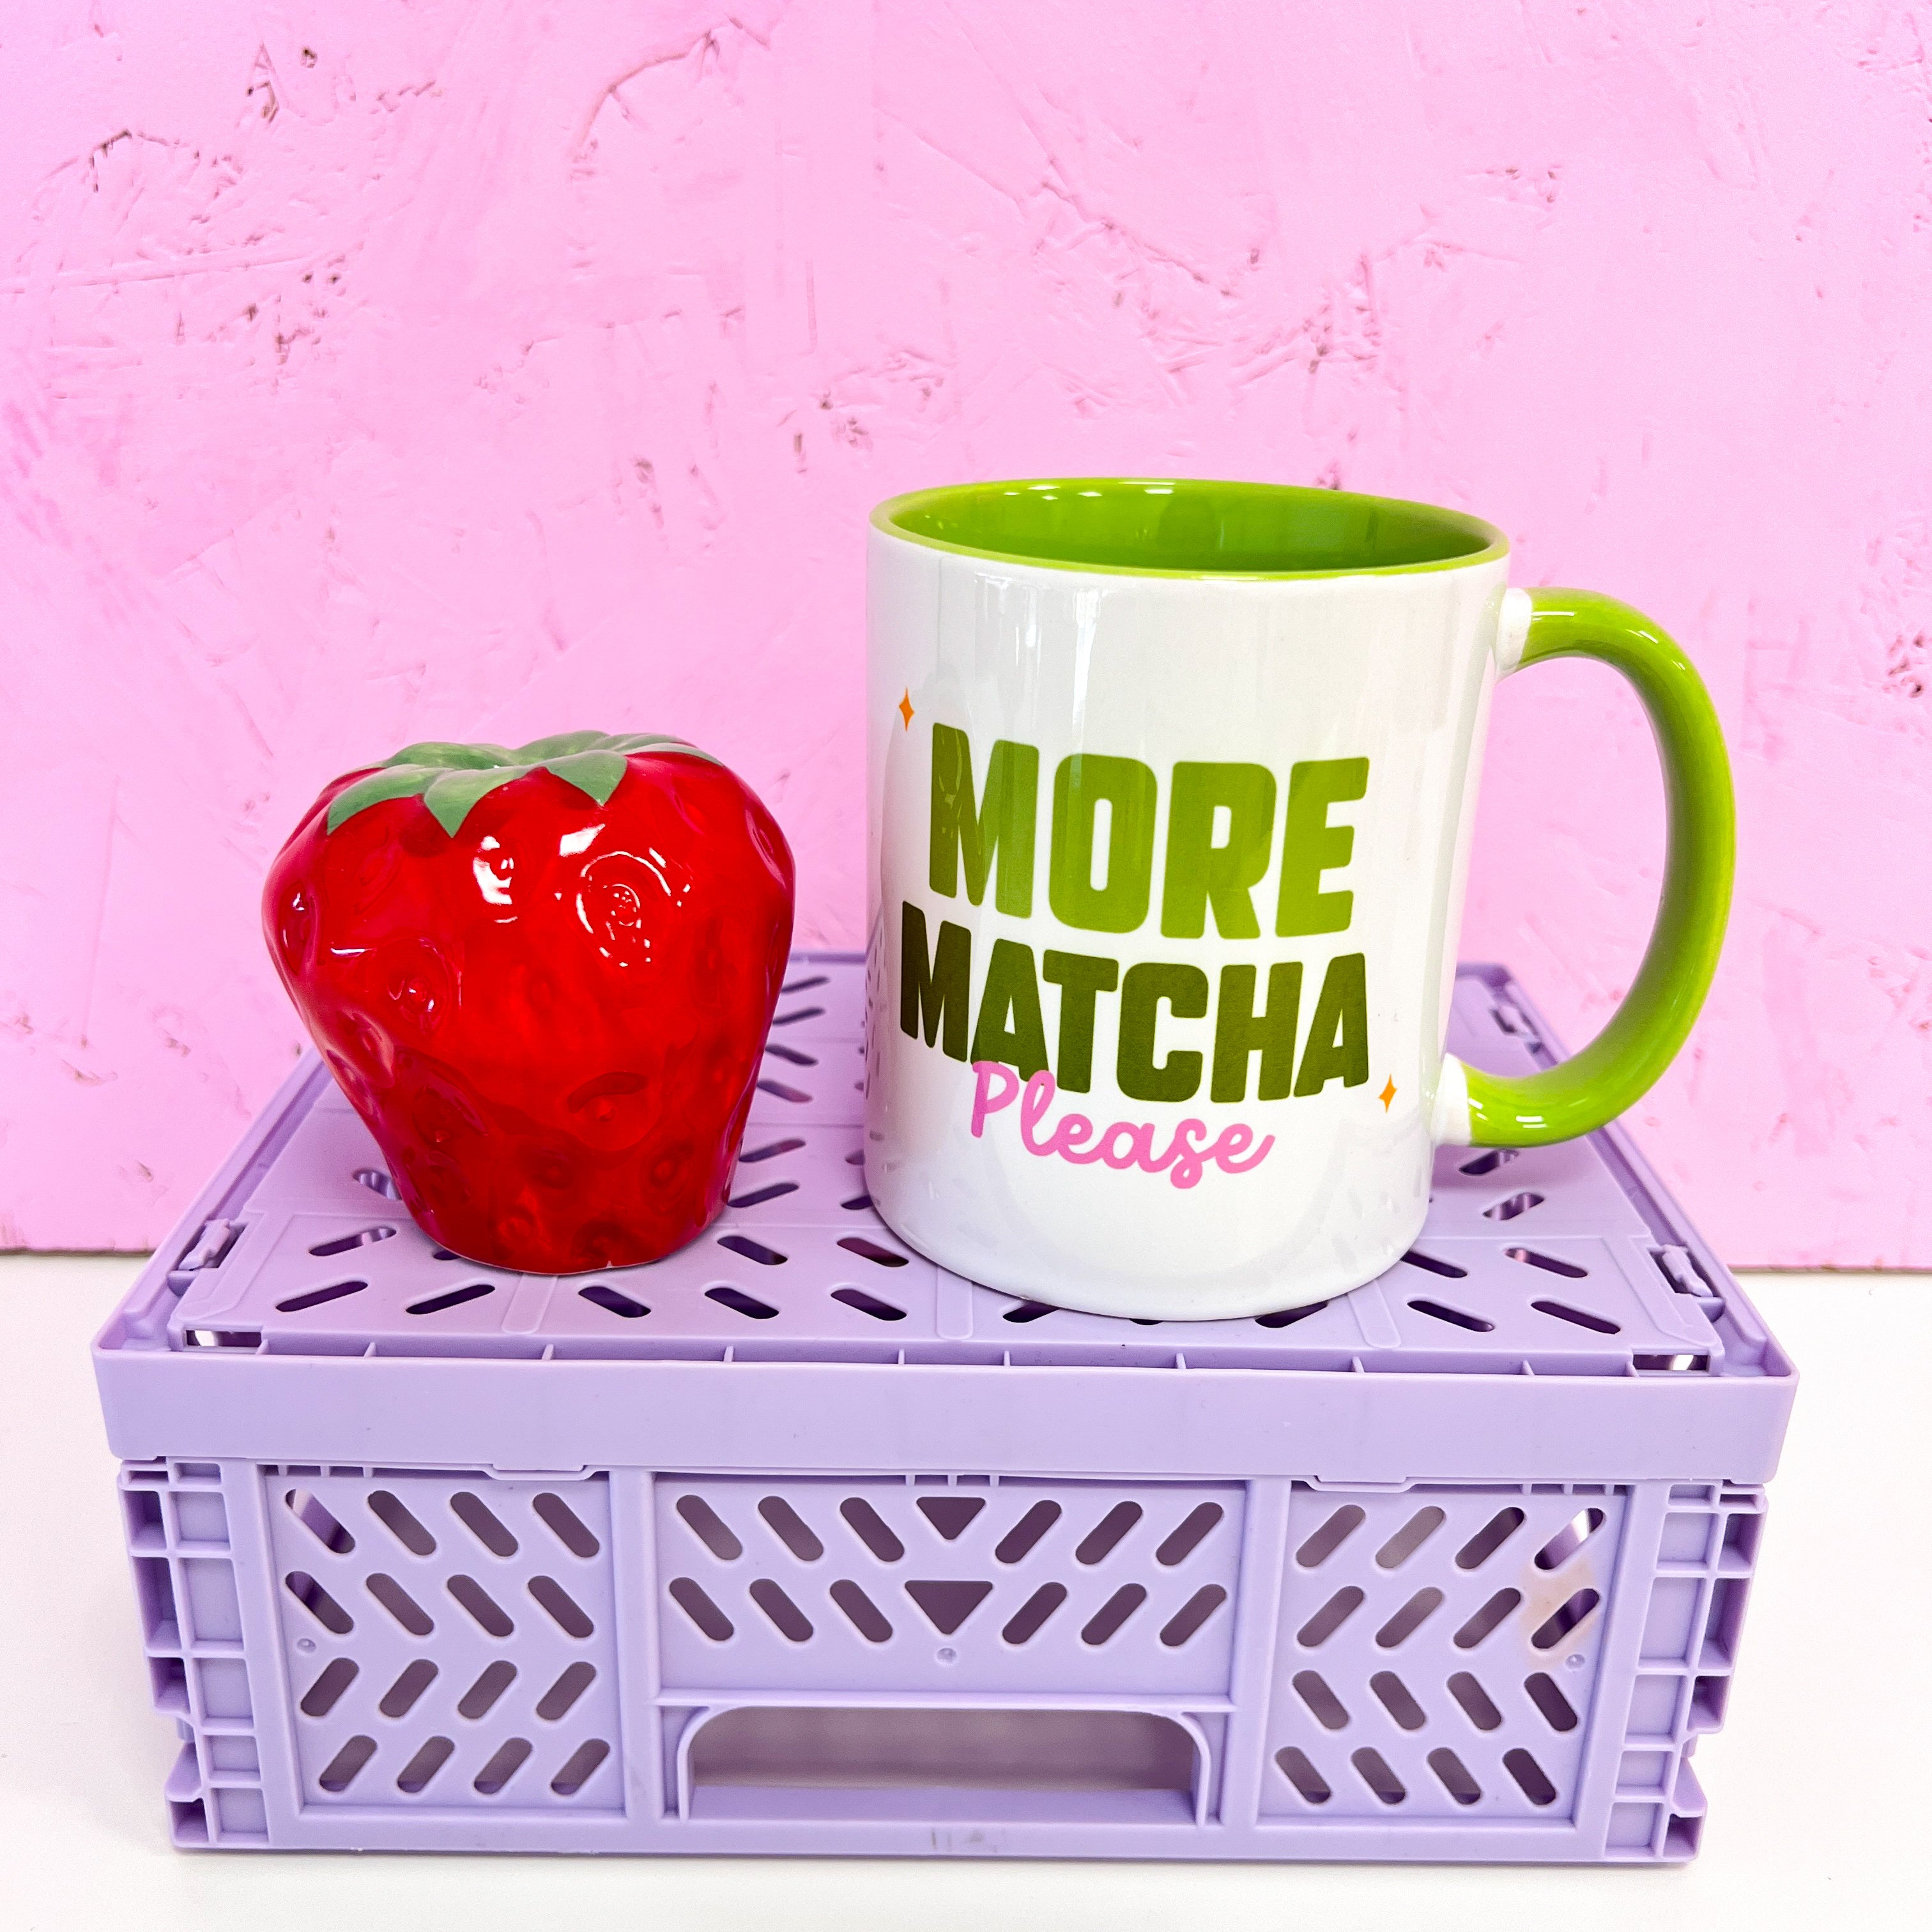 More matcha please mug